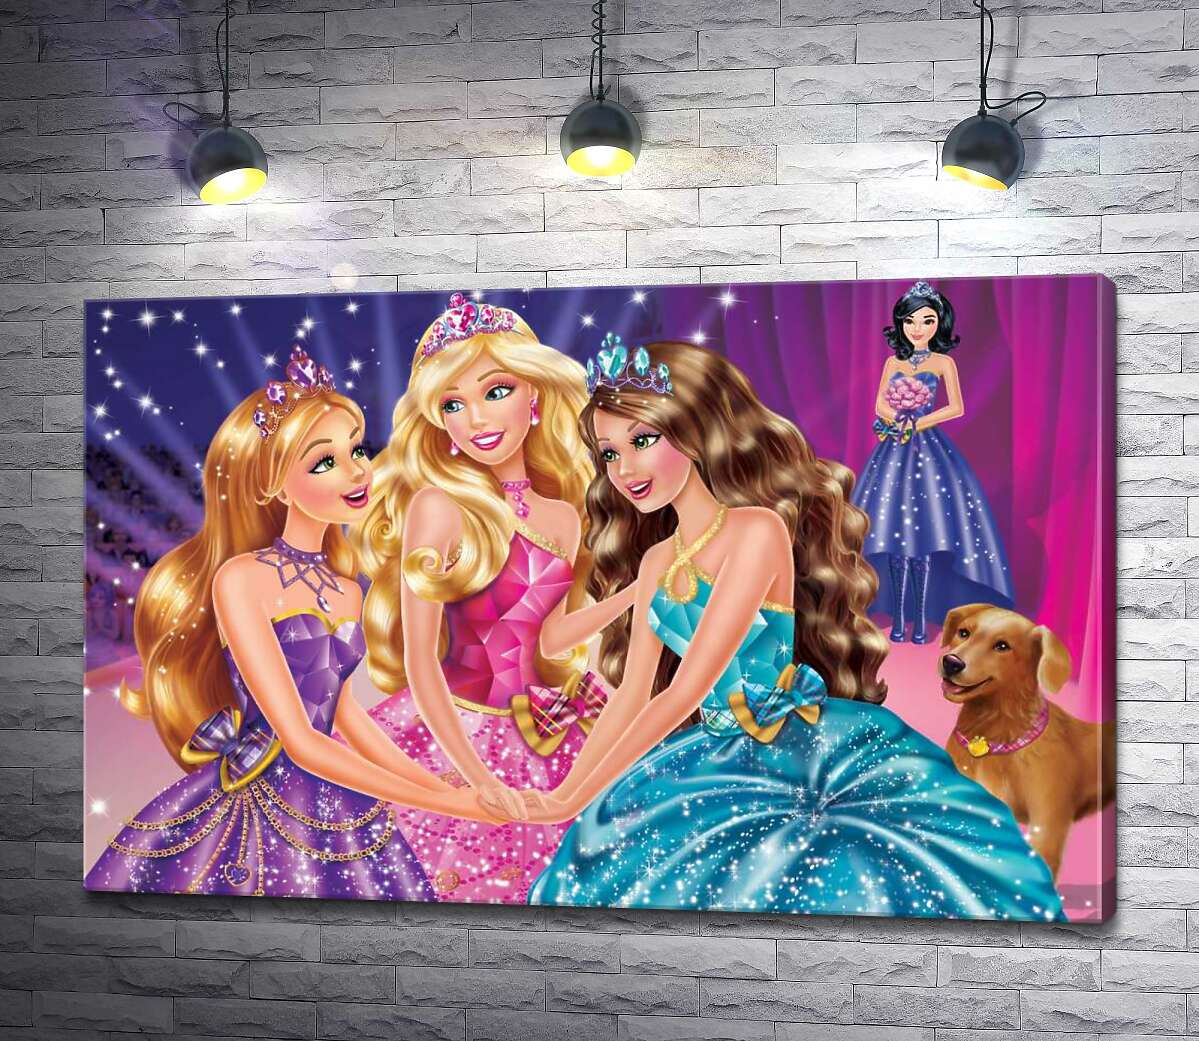 картина Три подруги Блер, Хайлі та Айла на постері до мультфільму "Барбі: Академія принцес" (Barbie: Princess Charm School)